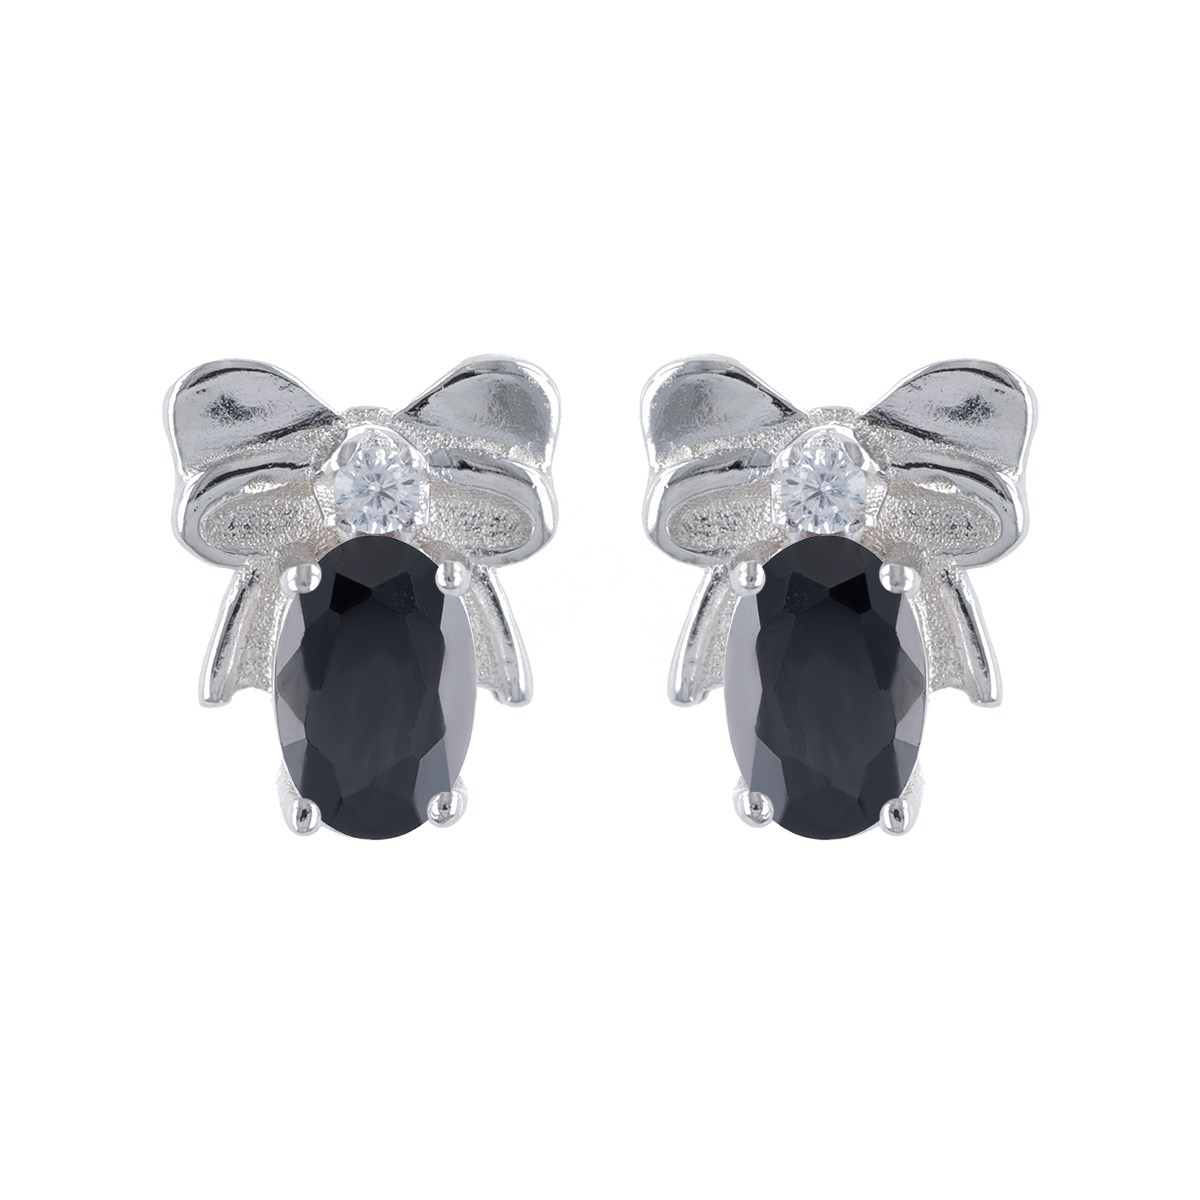 Boucles d'oreilles argent rhodié noeud papillon et cubic zirconia noir